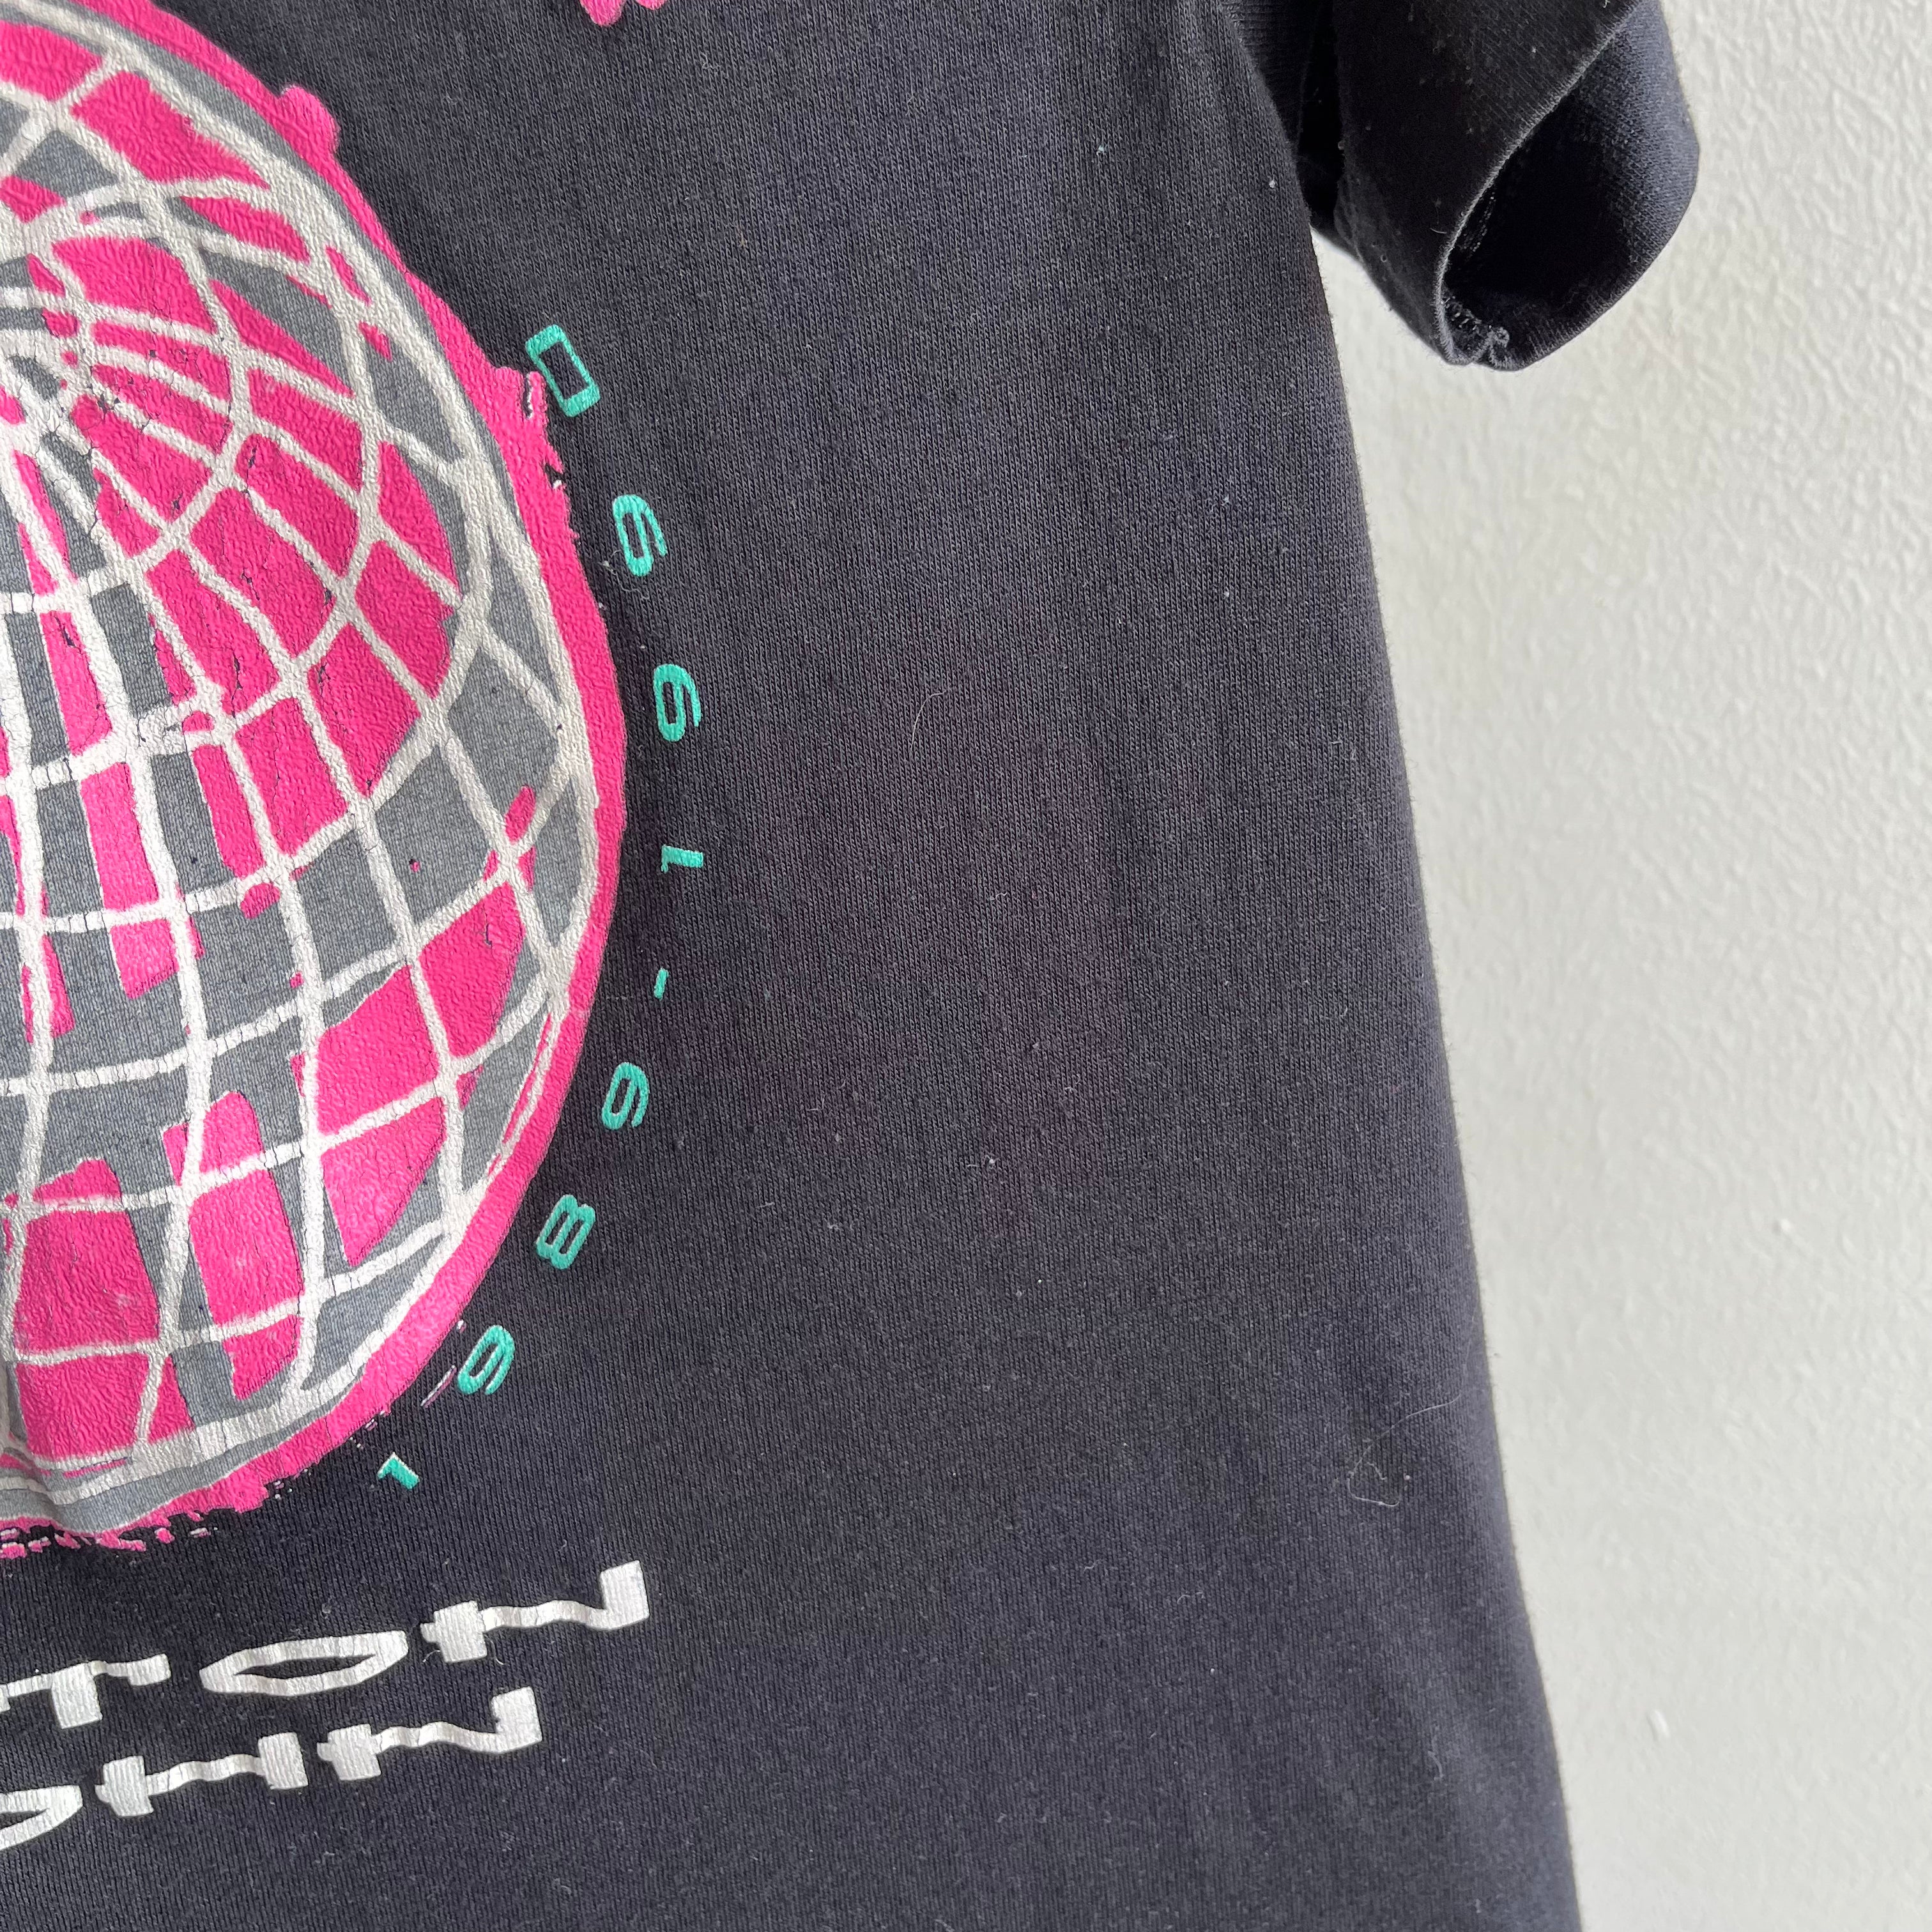 1989/90 Elton John World Tour T-Shirt